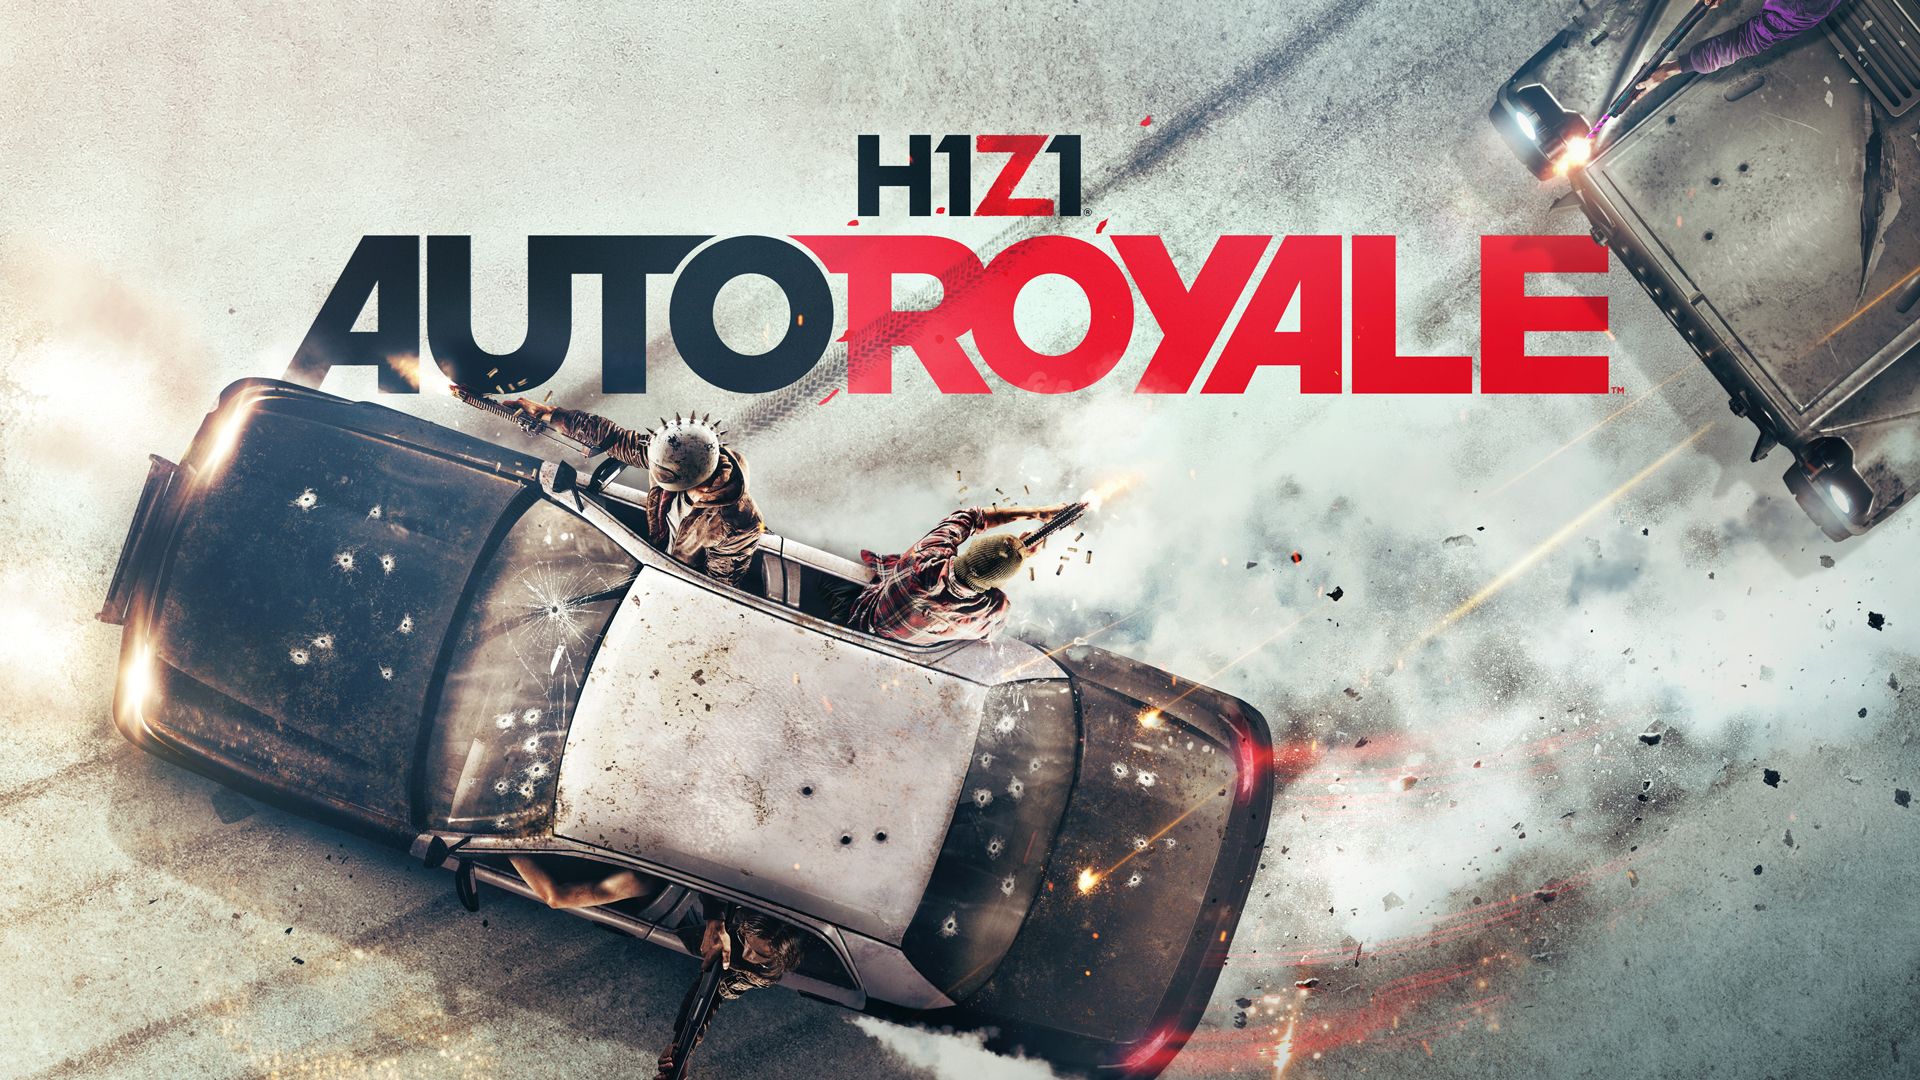 H1Z1 hat Release, will sich mit Auto-Royale von Fortnite & PUBG abheben